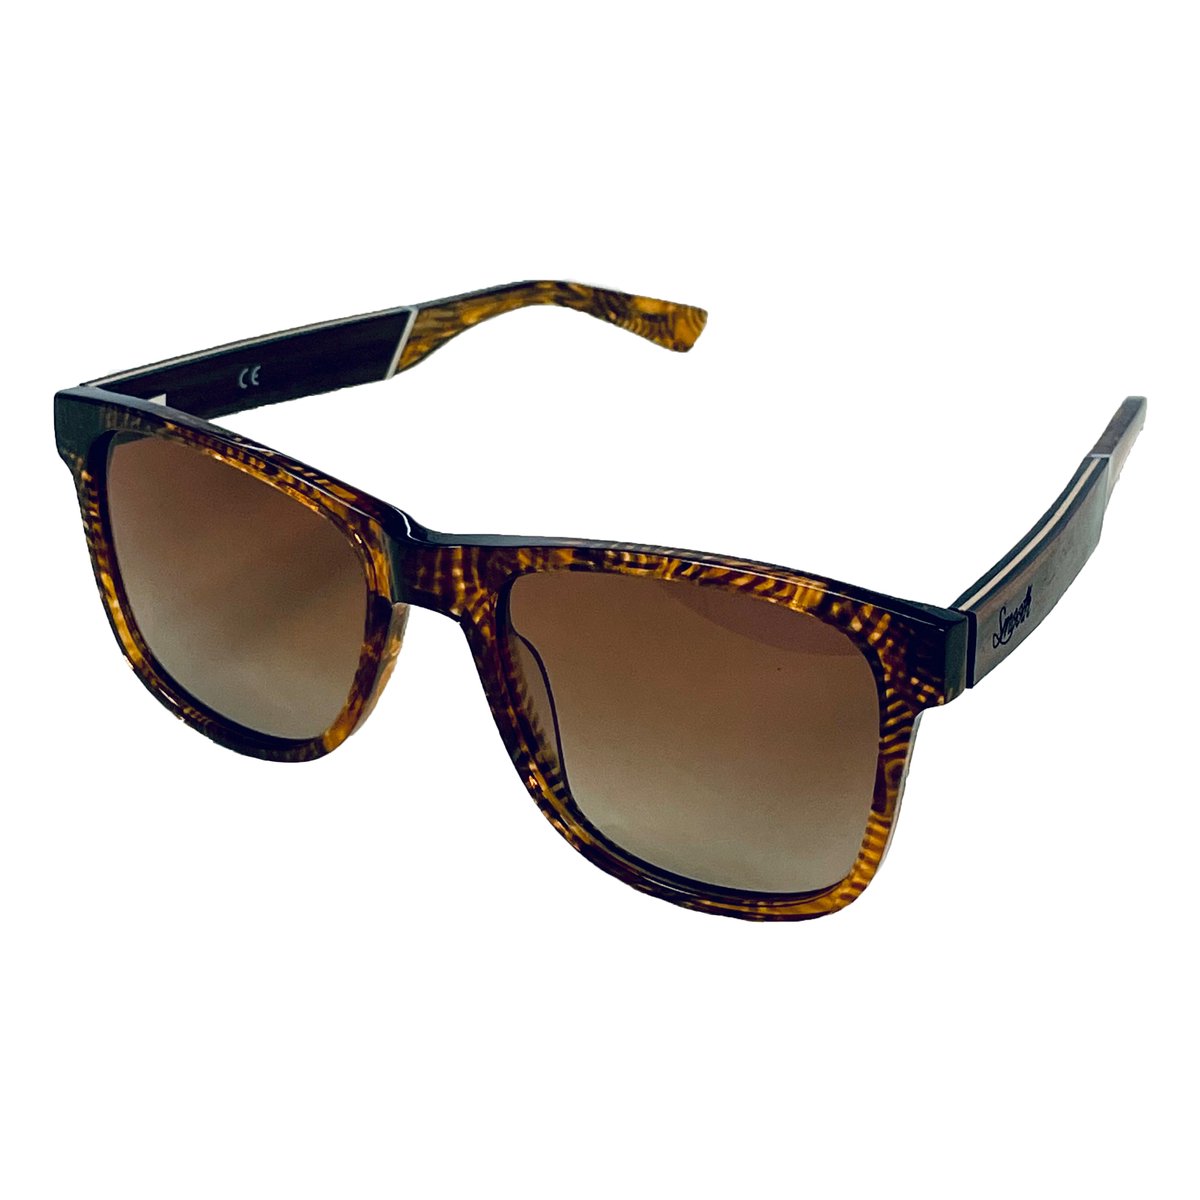 SMOOTH - houten zonnebril - unisex model - UV400 gepolariseerde glazen van de hoogste kwaliteit - HUNCHO TEA